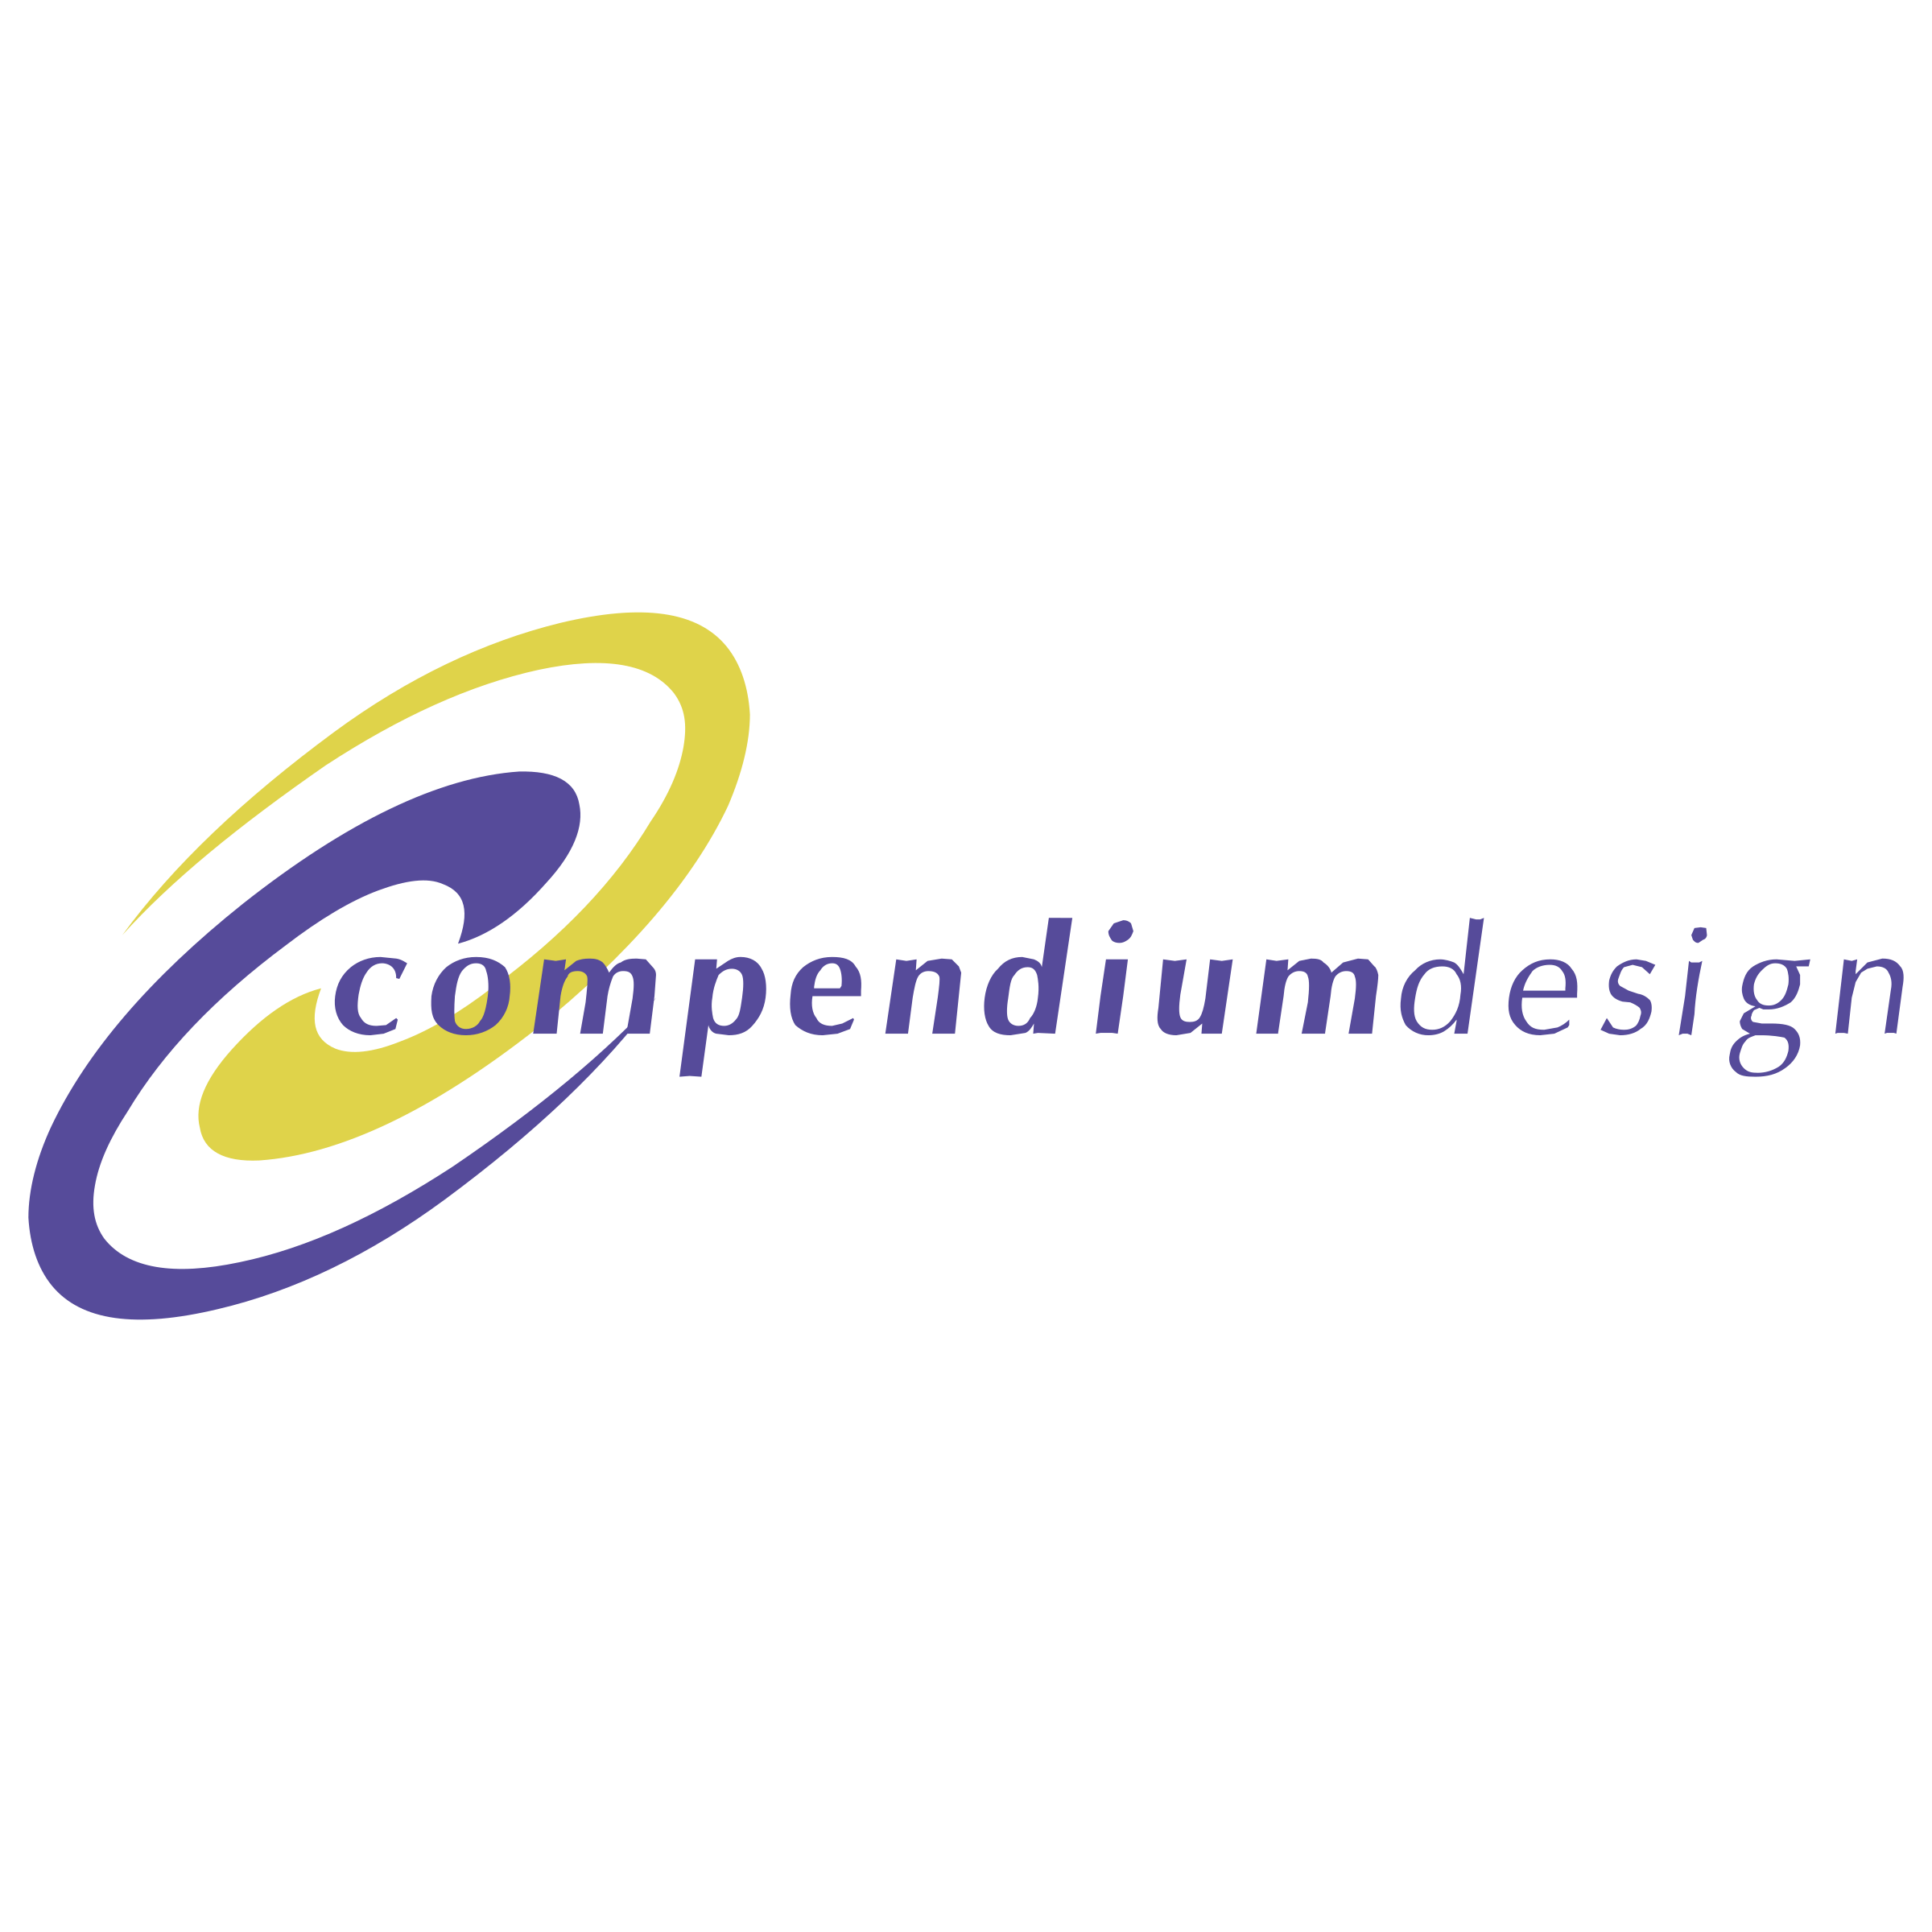 Compendium Logo - Compendium Design Logo PNG Transparent & SVG Vector - Freebie Supply